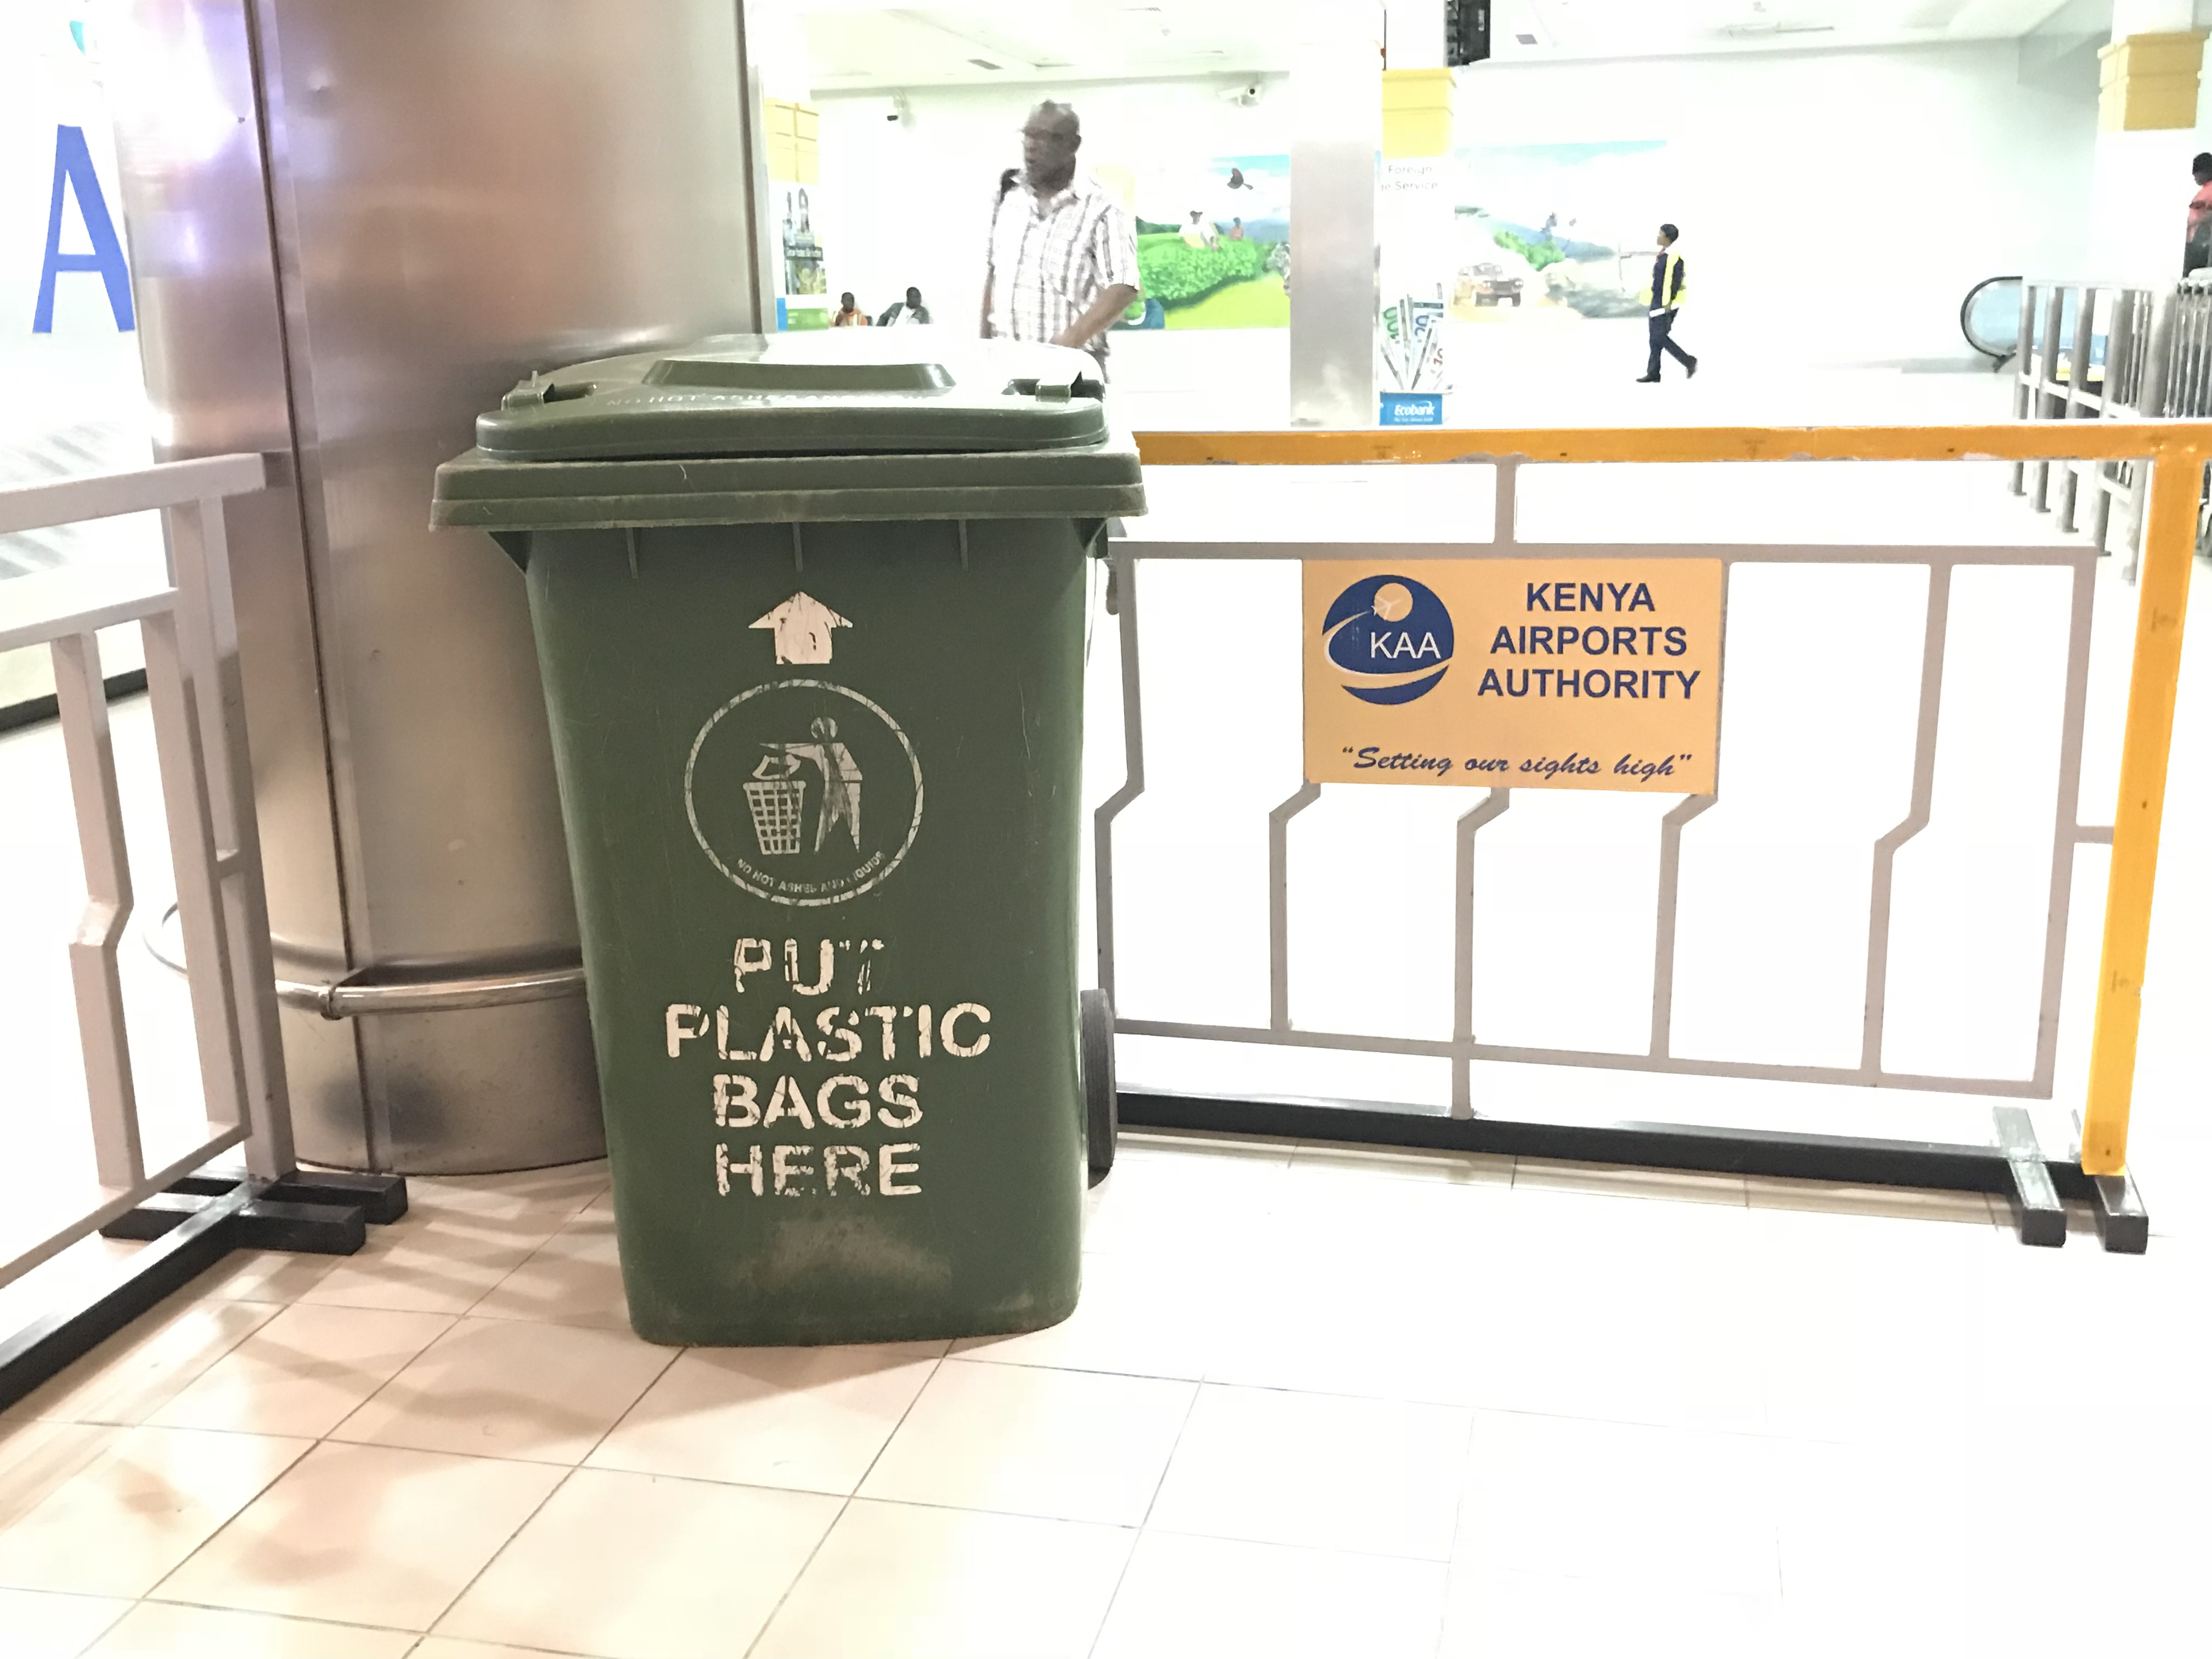 Plastic bag ban in Kenya